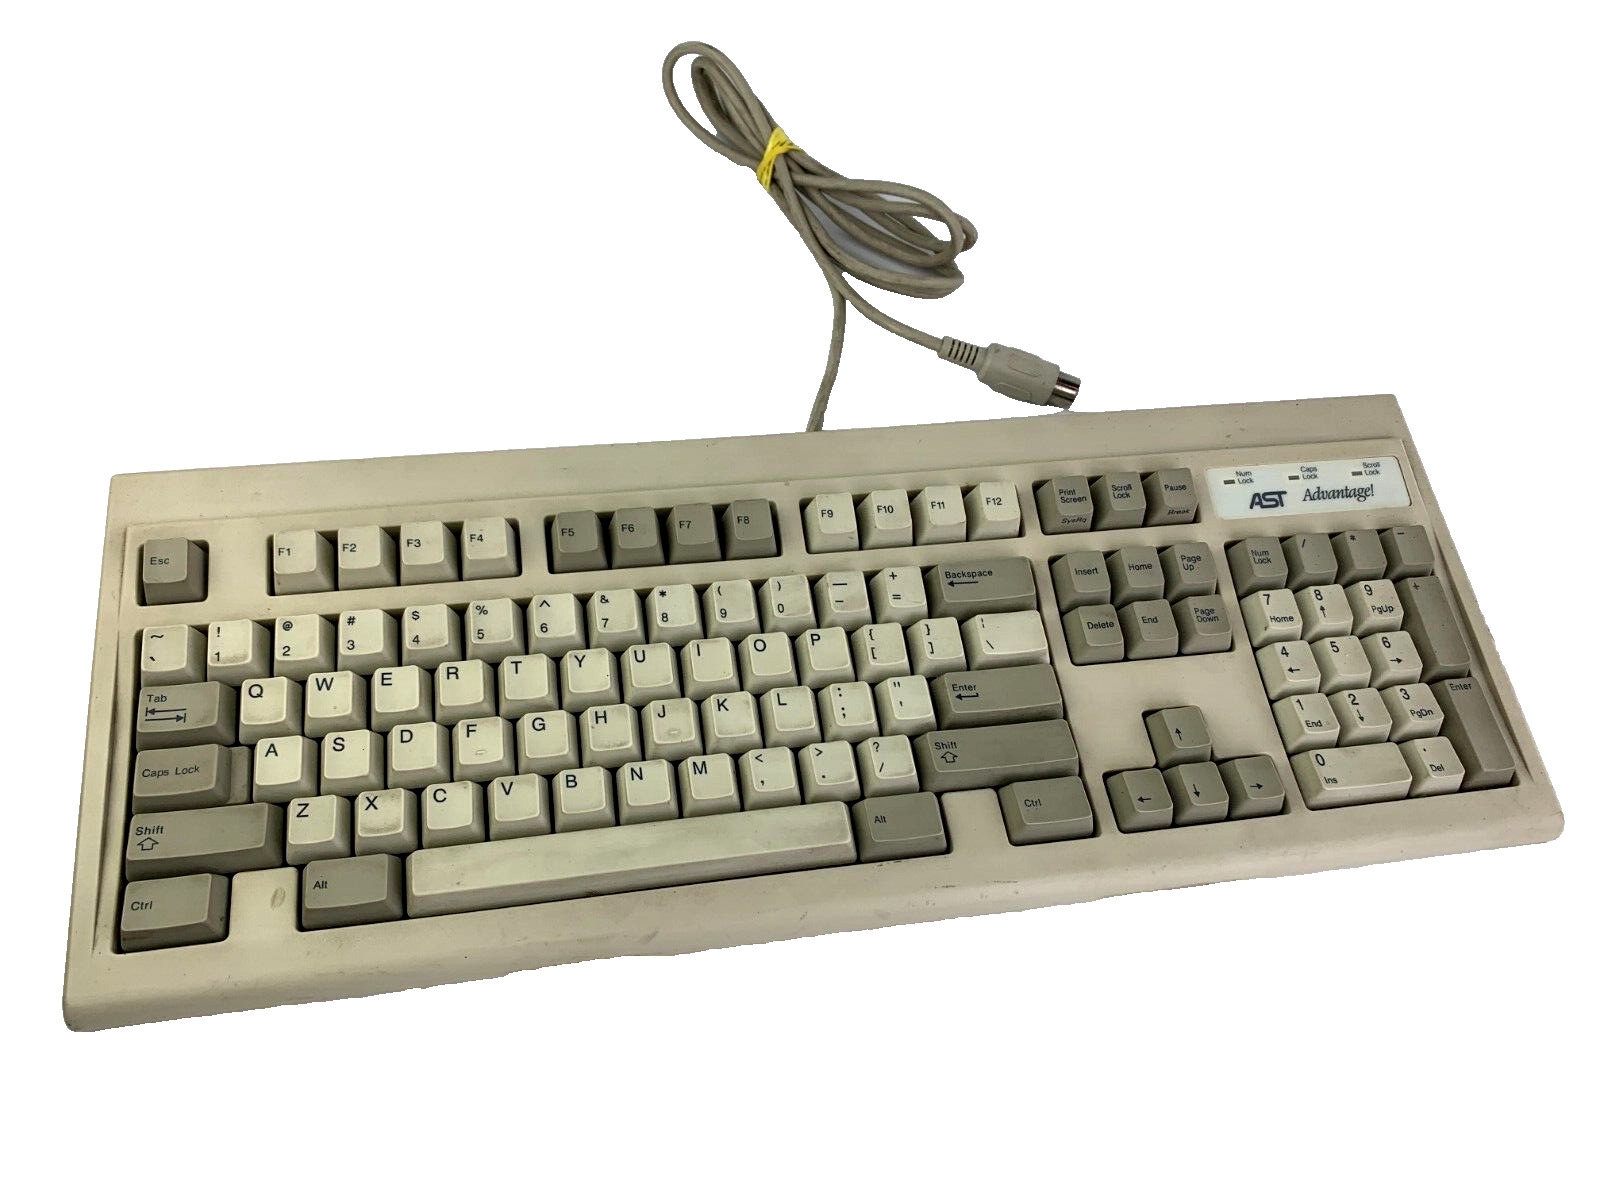 *VINTAGE* 1991 AST Advantage Keyboard SK-1100 5-PIN Male PN: KKA102RE1U